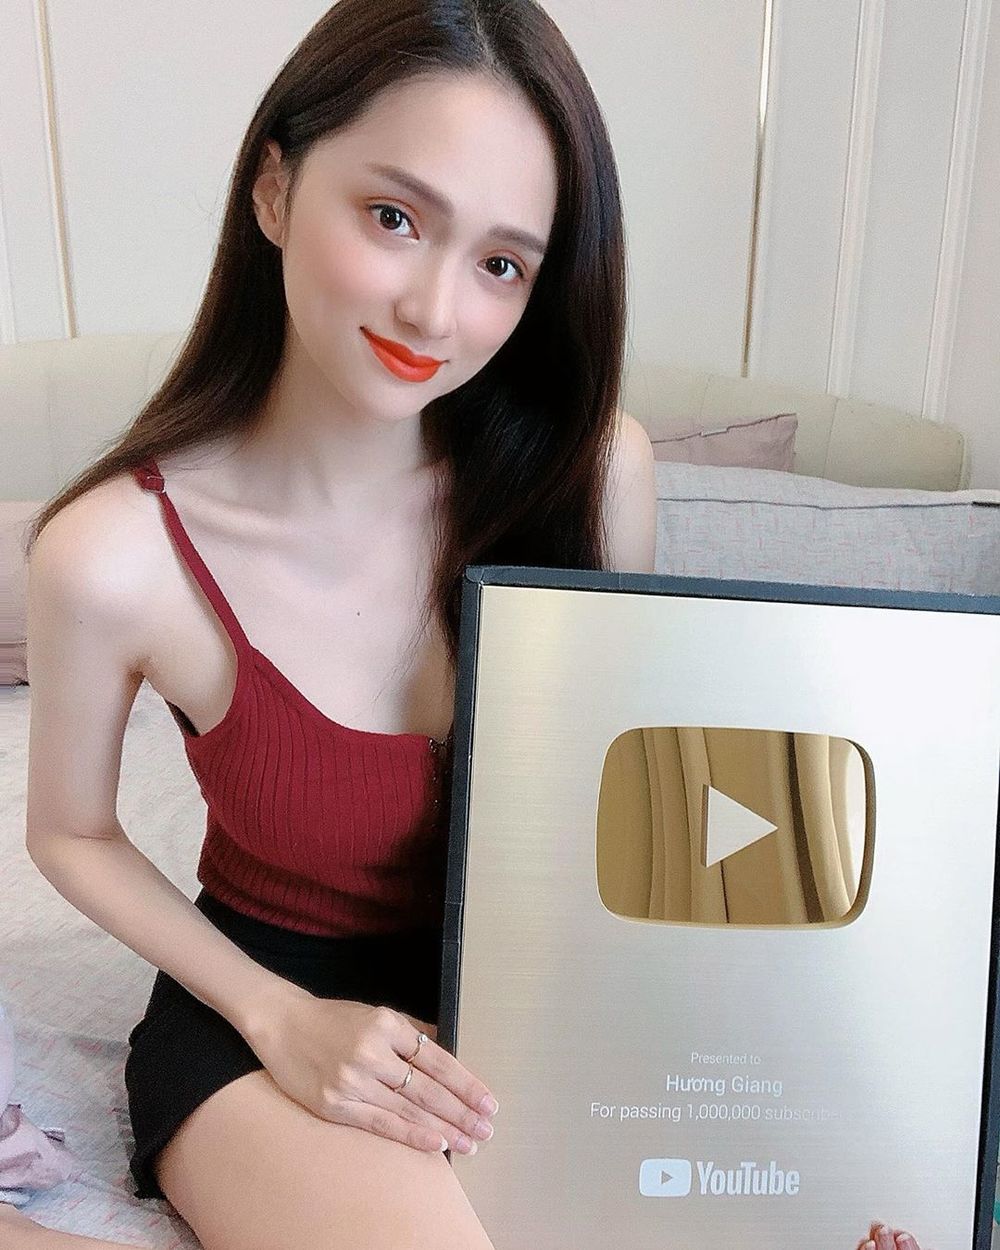  
Trong kỳ nghỉ dài này, Hương Giang cũng đã đạt hơn 1 triệu subcriber trên Youtube và nhận được nút vàng đáng quý của mình. (Ảnh: FBNV)